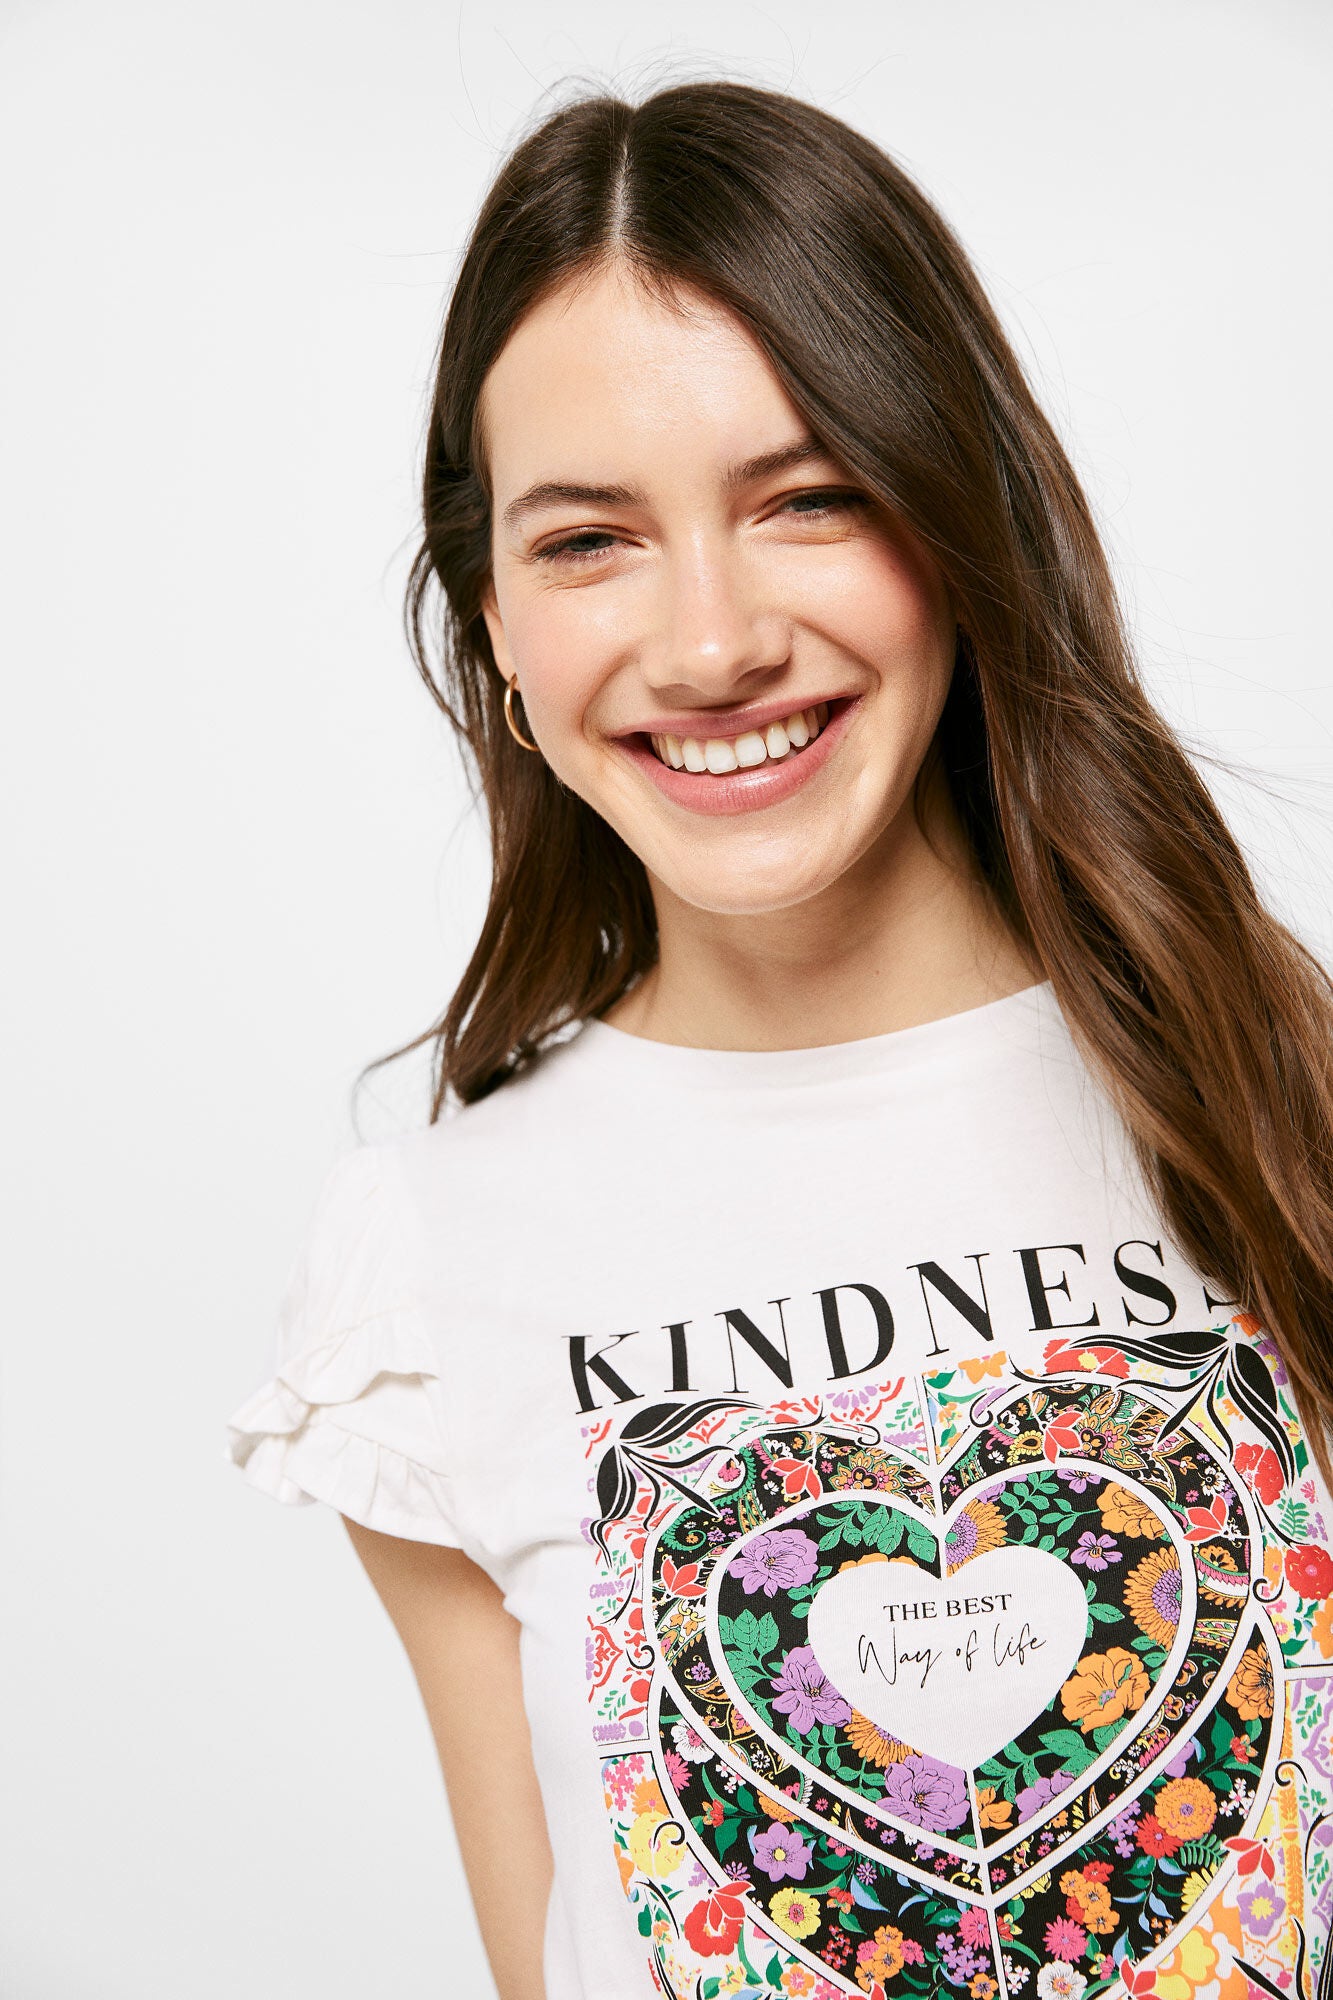 "Kindness" T-shirt